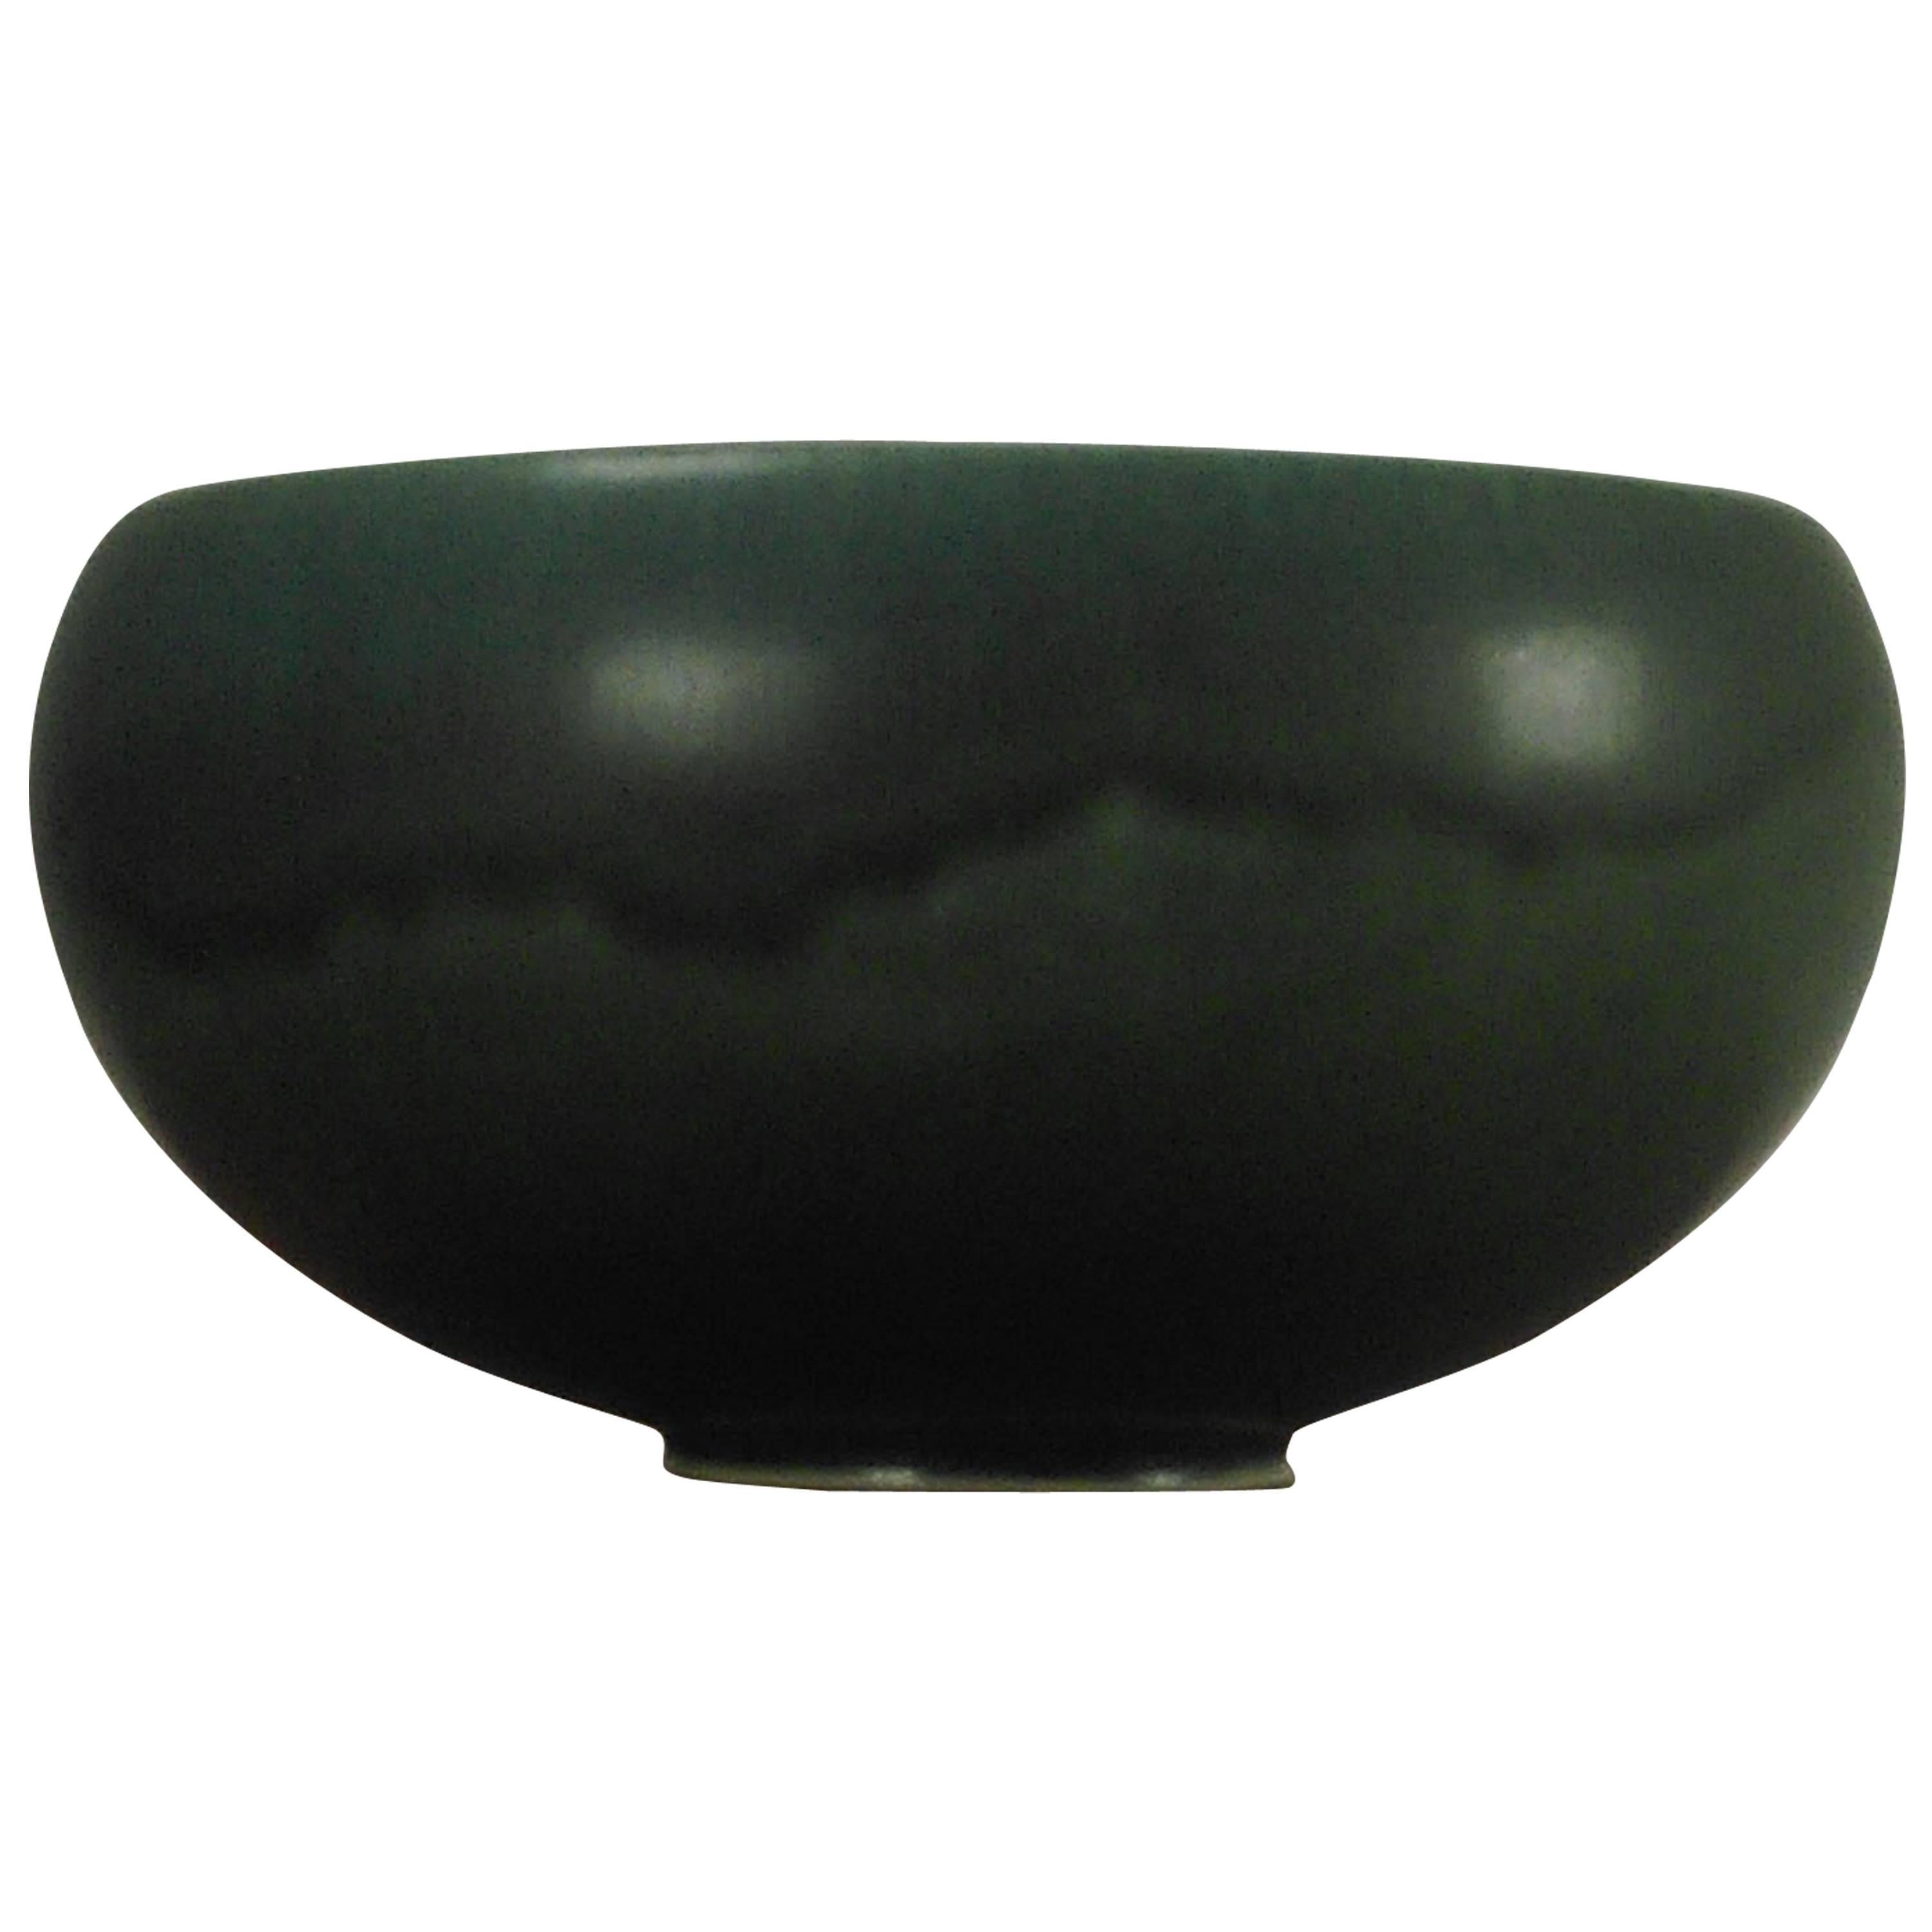 1950s Dan Saxbo Ceramic Bowl with Green Glaze